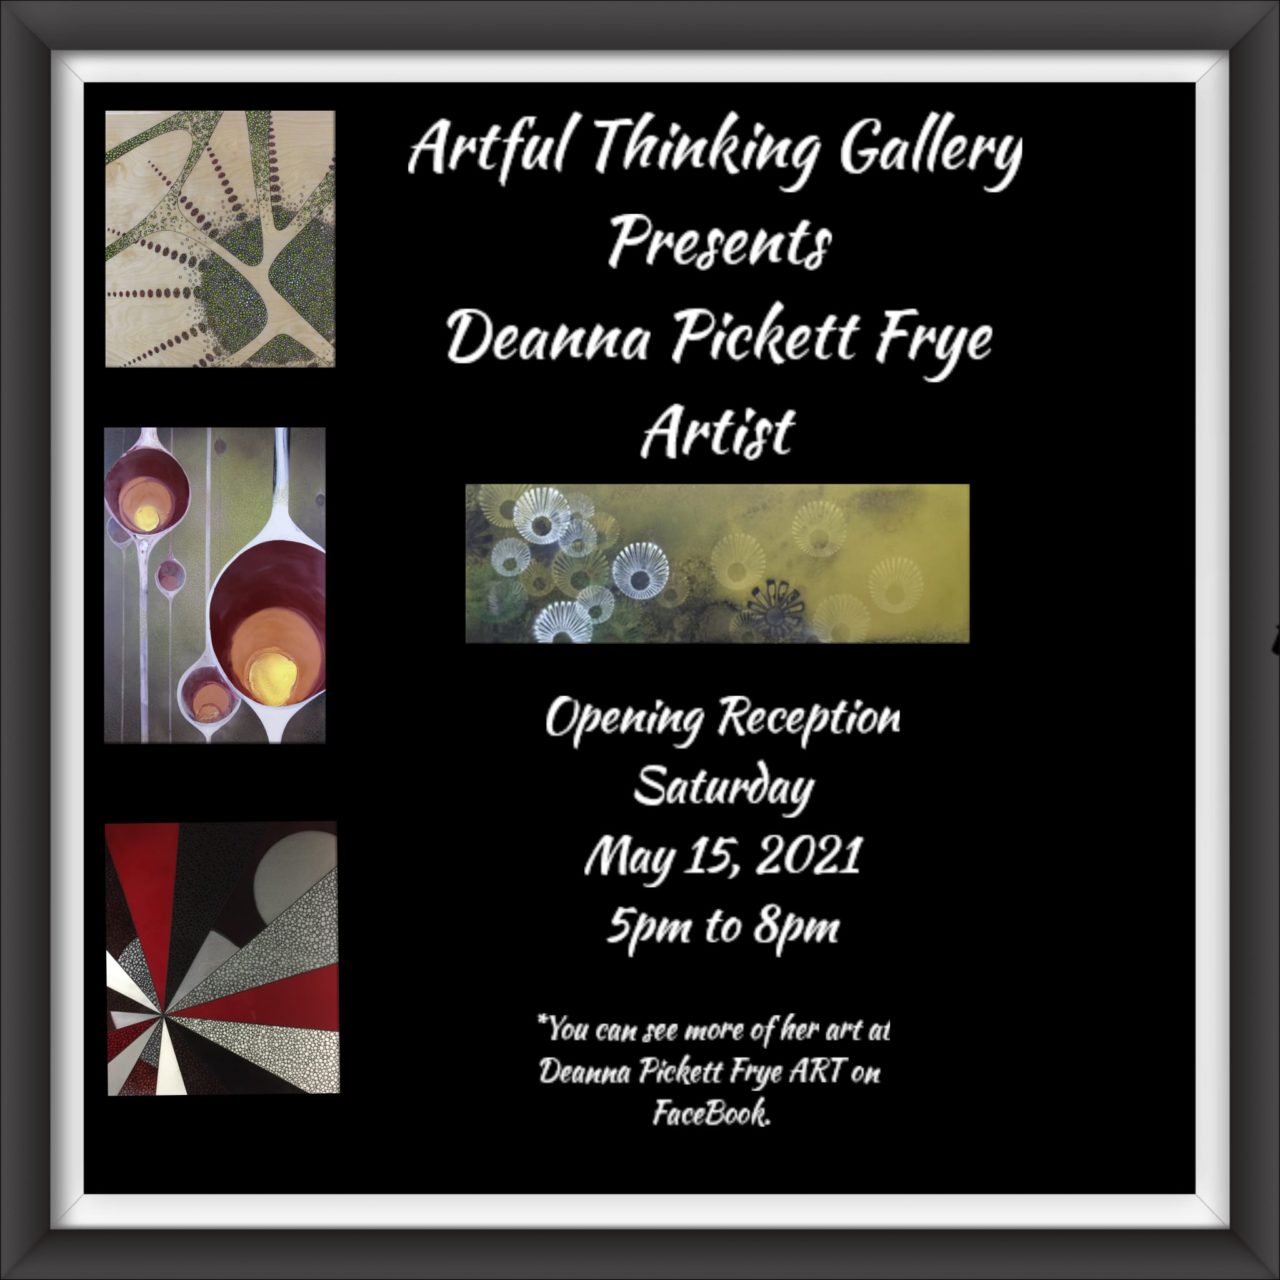 Artist Deanna Pickett Frye 2 deanna picket frye CedarCreekLake.Online